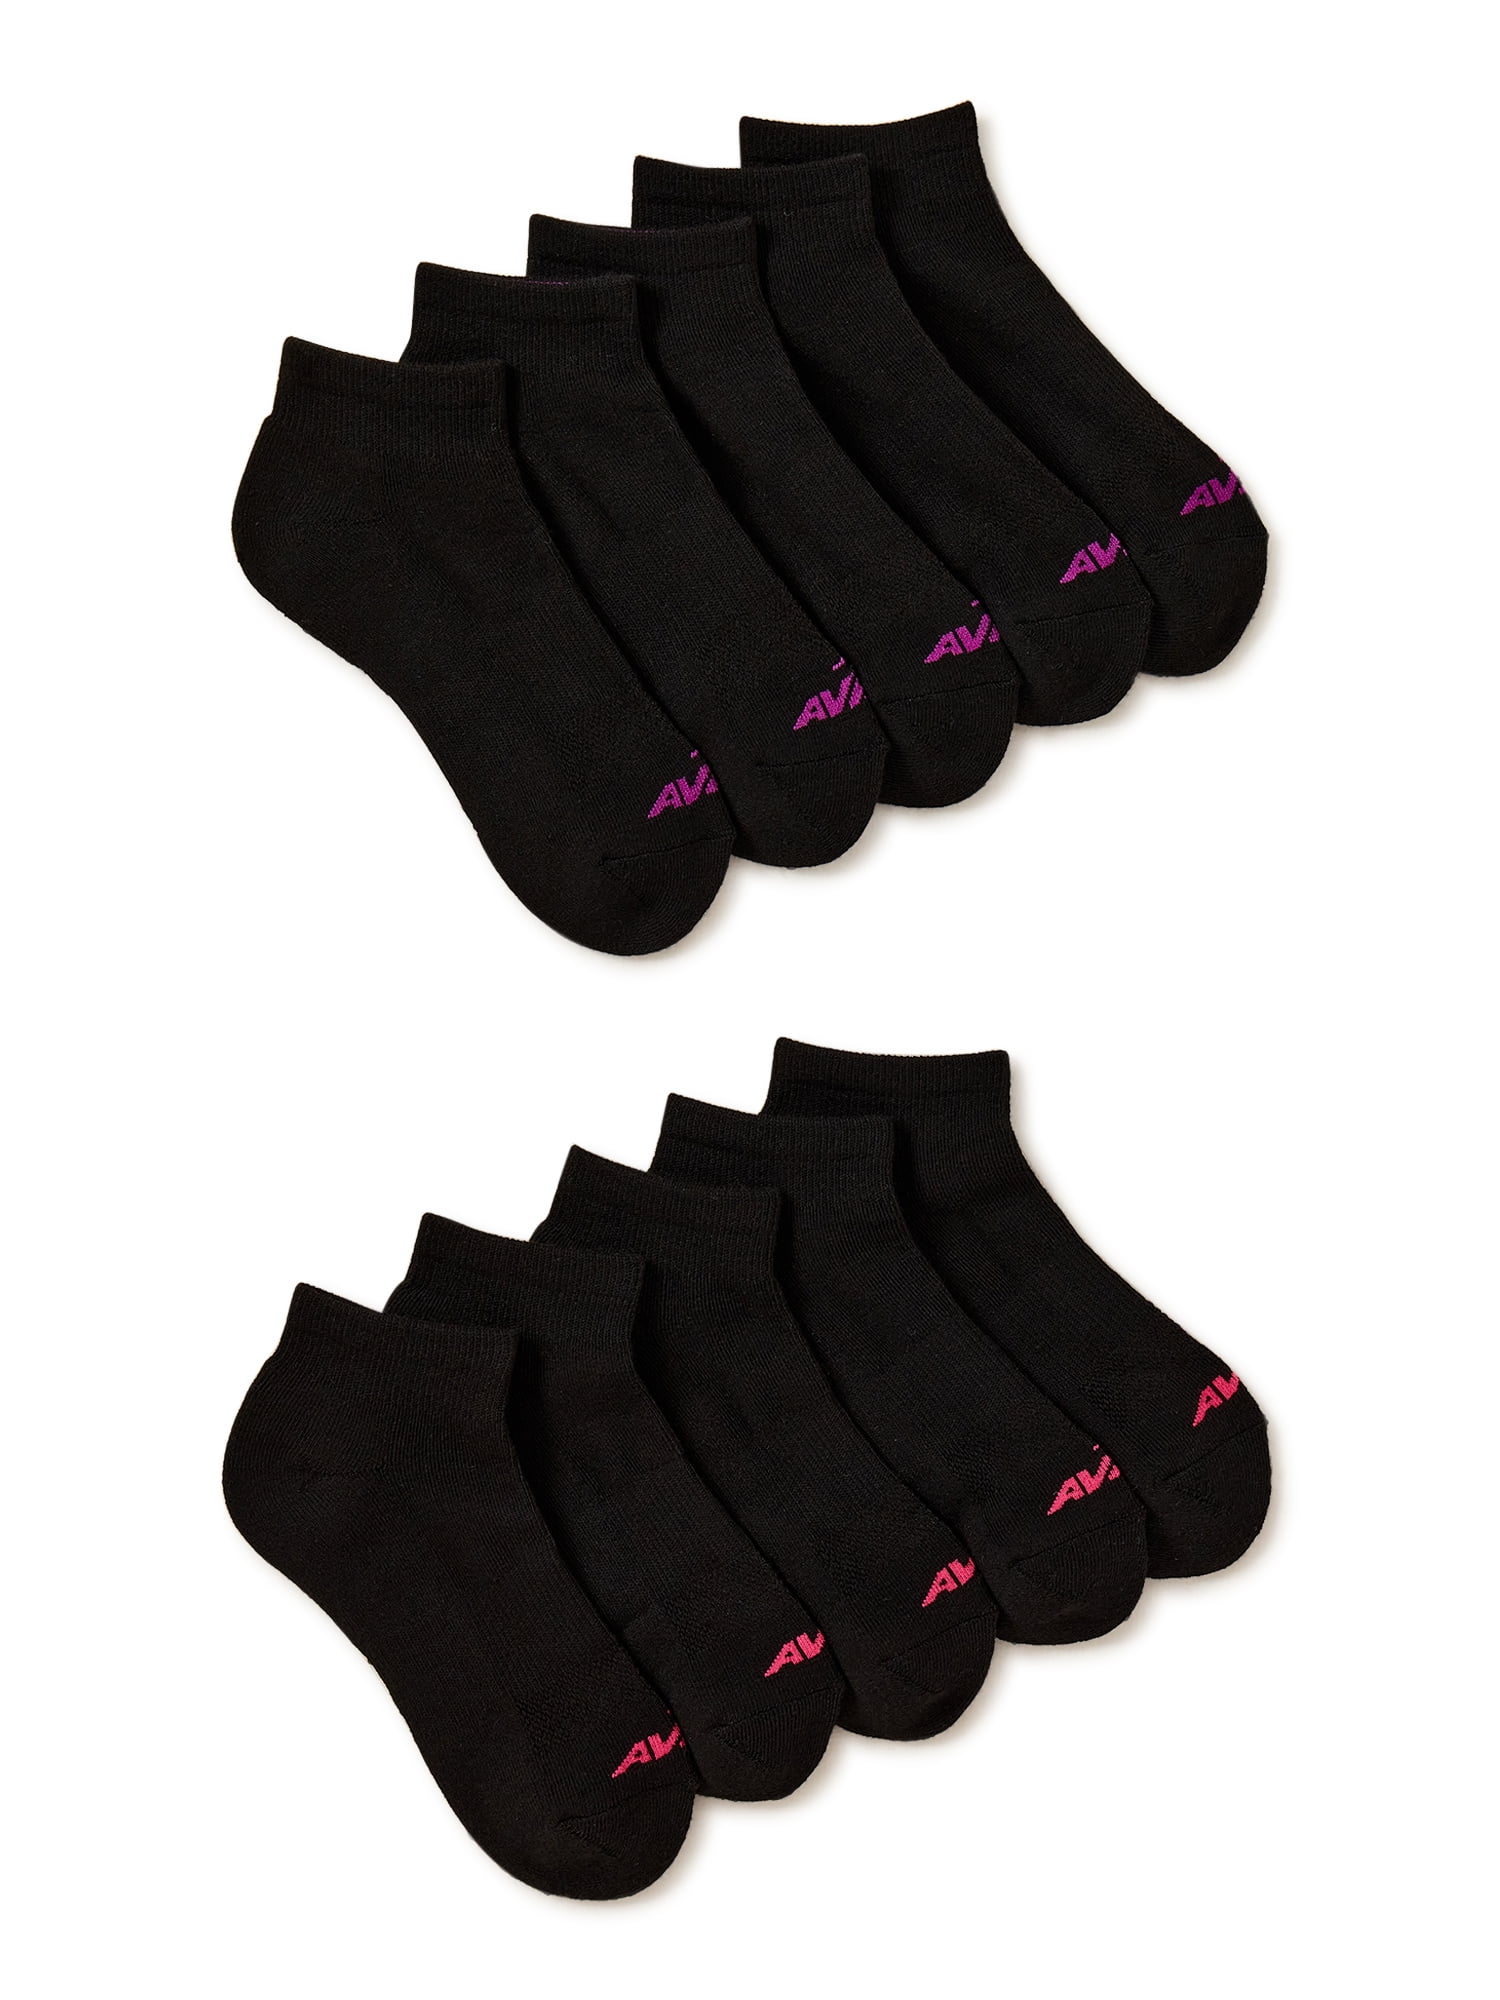 Women's Ankle Socks, Women's Accessories